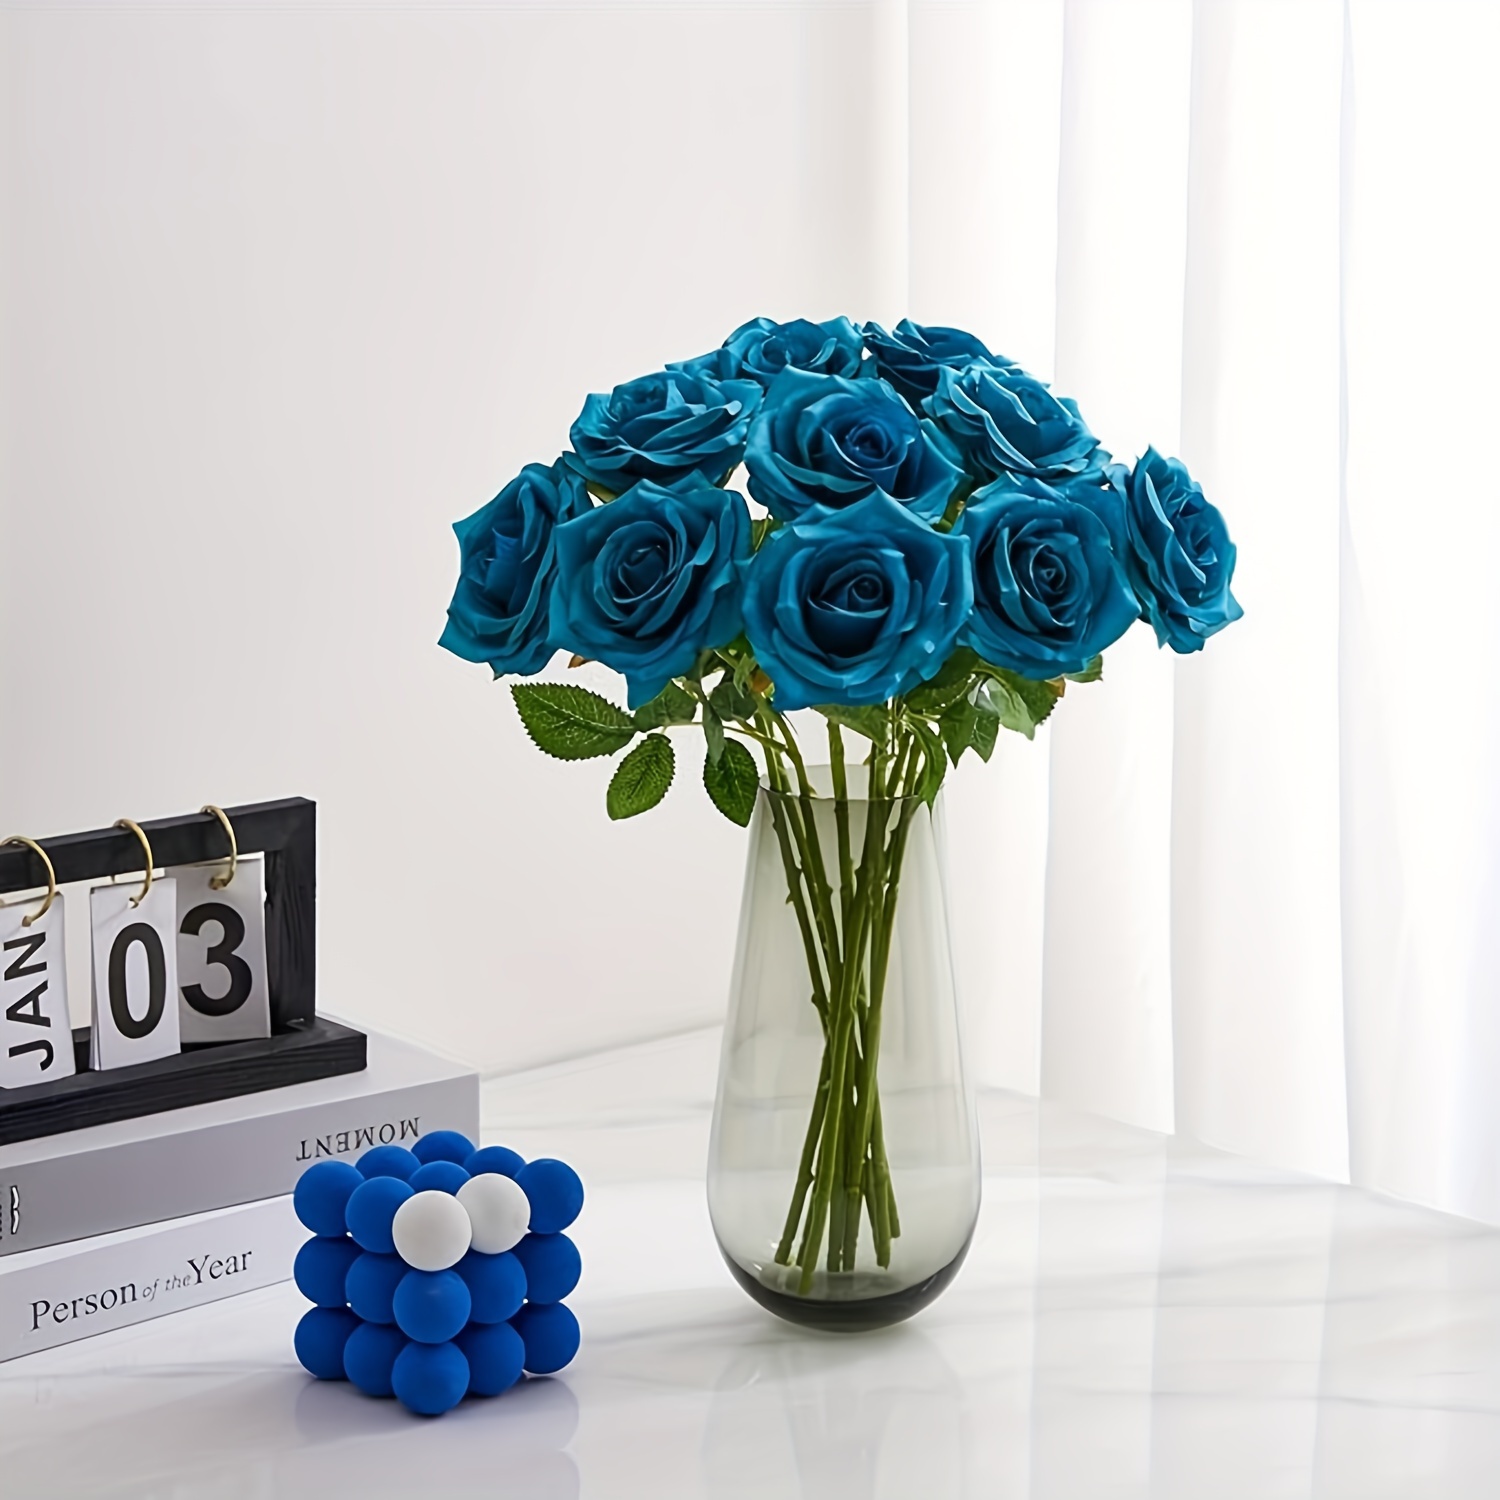 

6-piece Teal Artificial Rose Bouquet - Turquoise Blue Faux Silk Flowers For Wedding Decor, Bridal Arrangements & Centerpieces